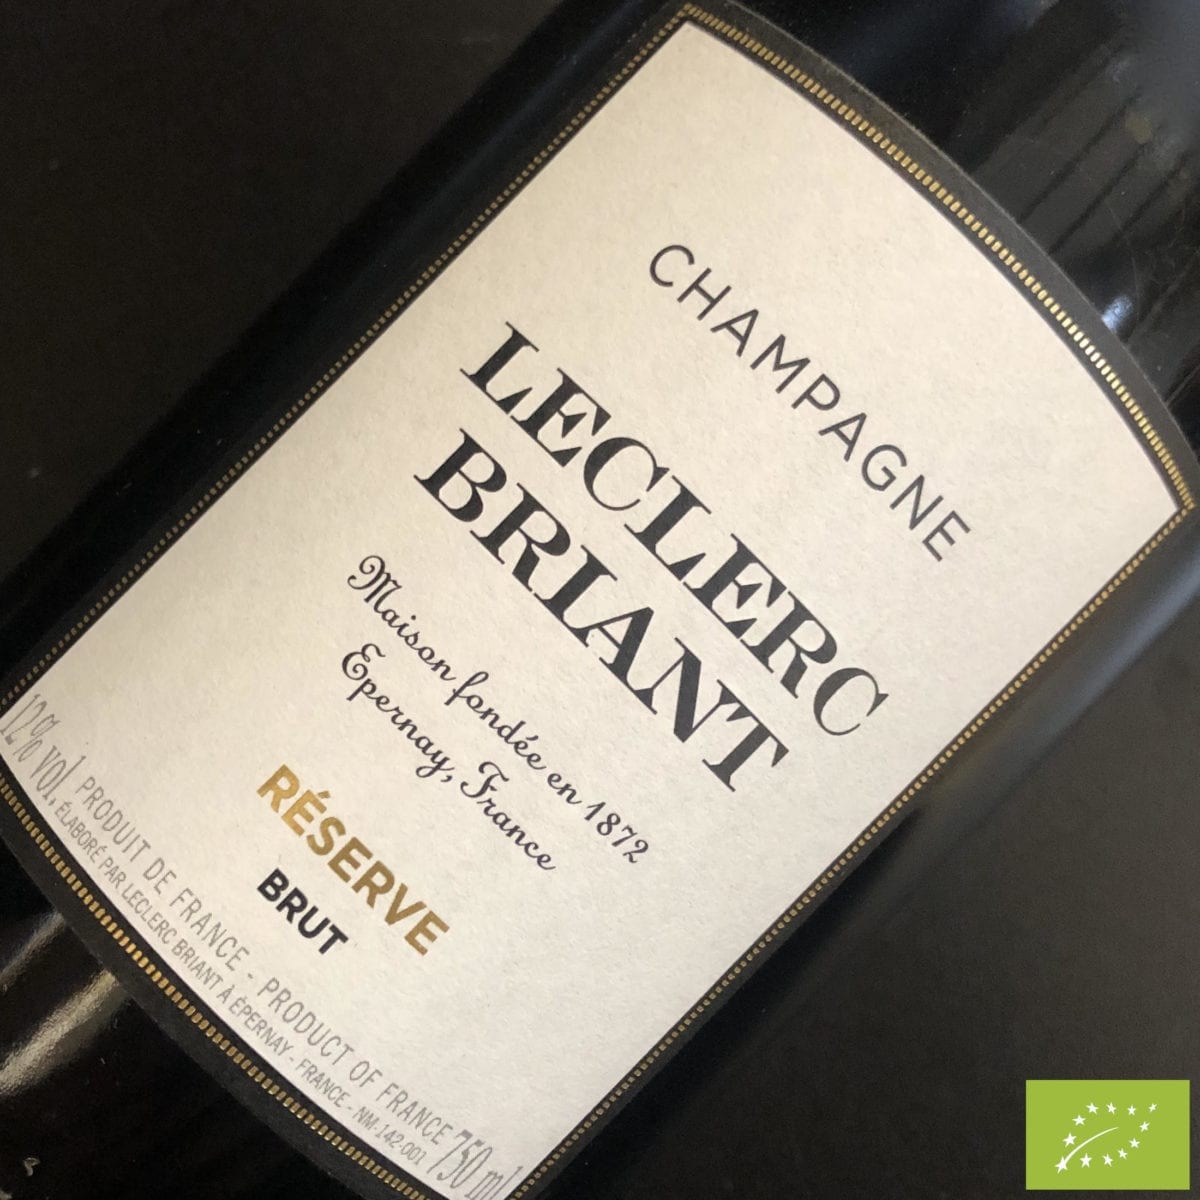 Champagne Brut Réserve Leclerc Briant